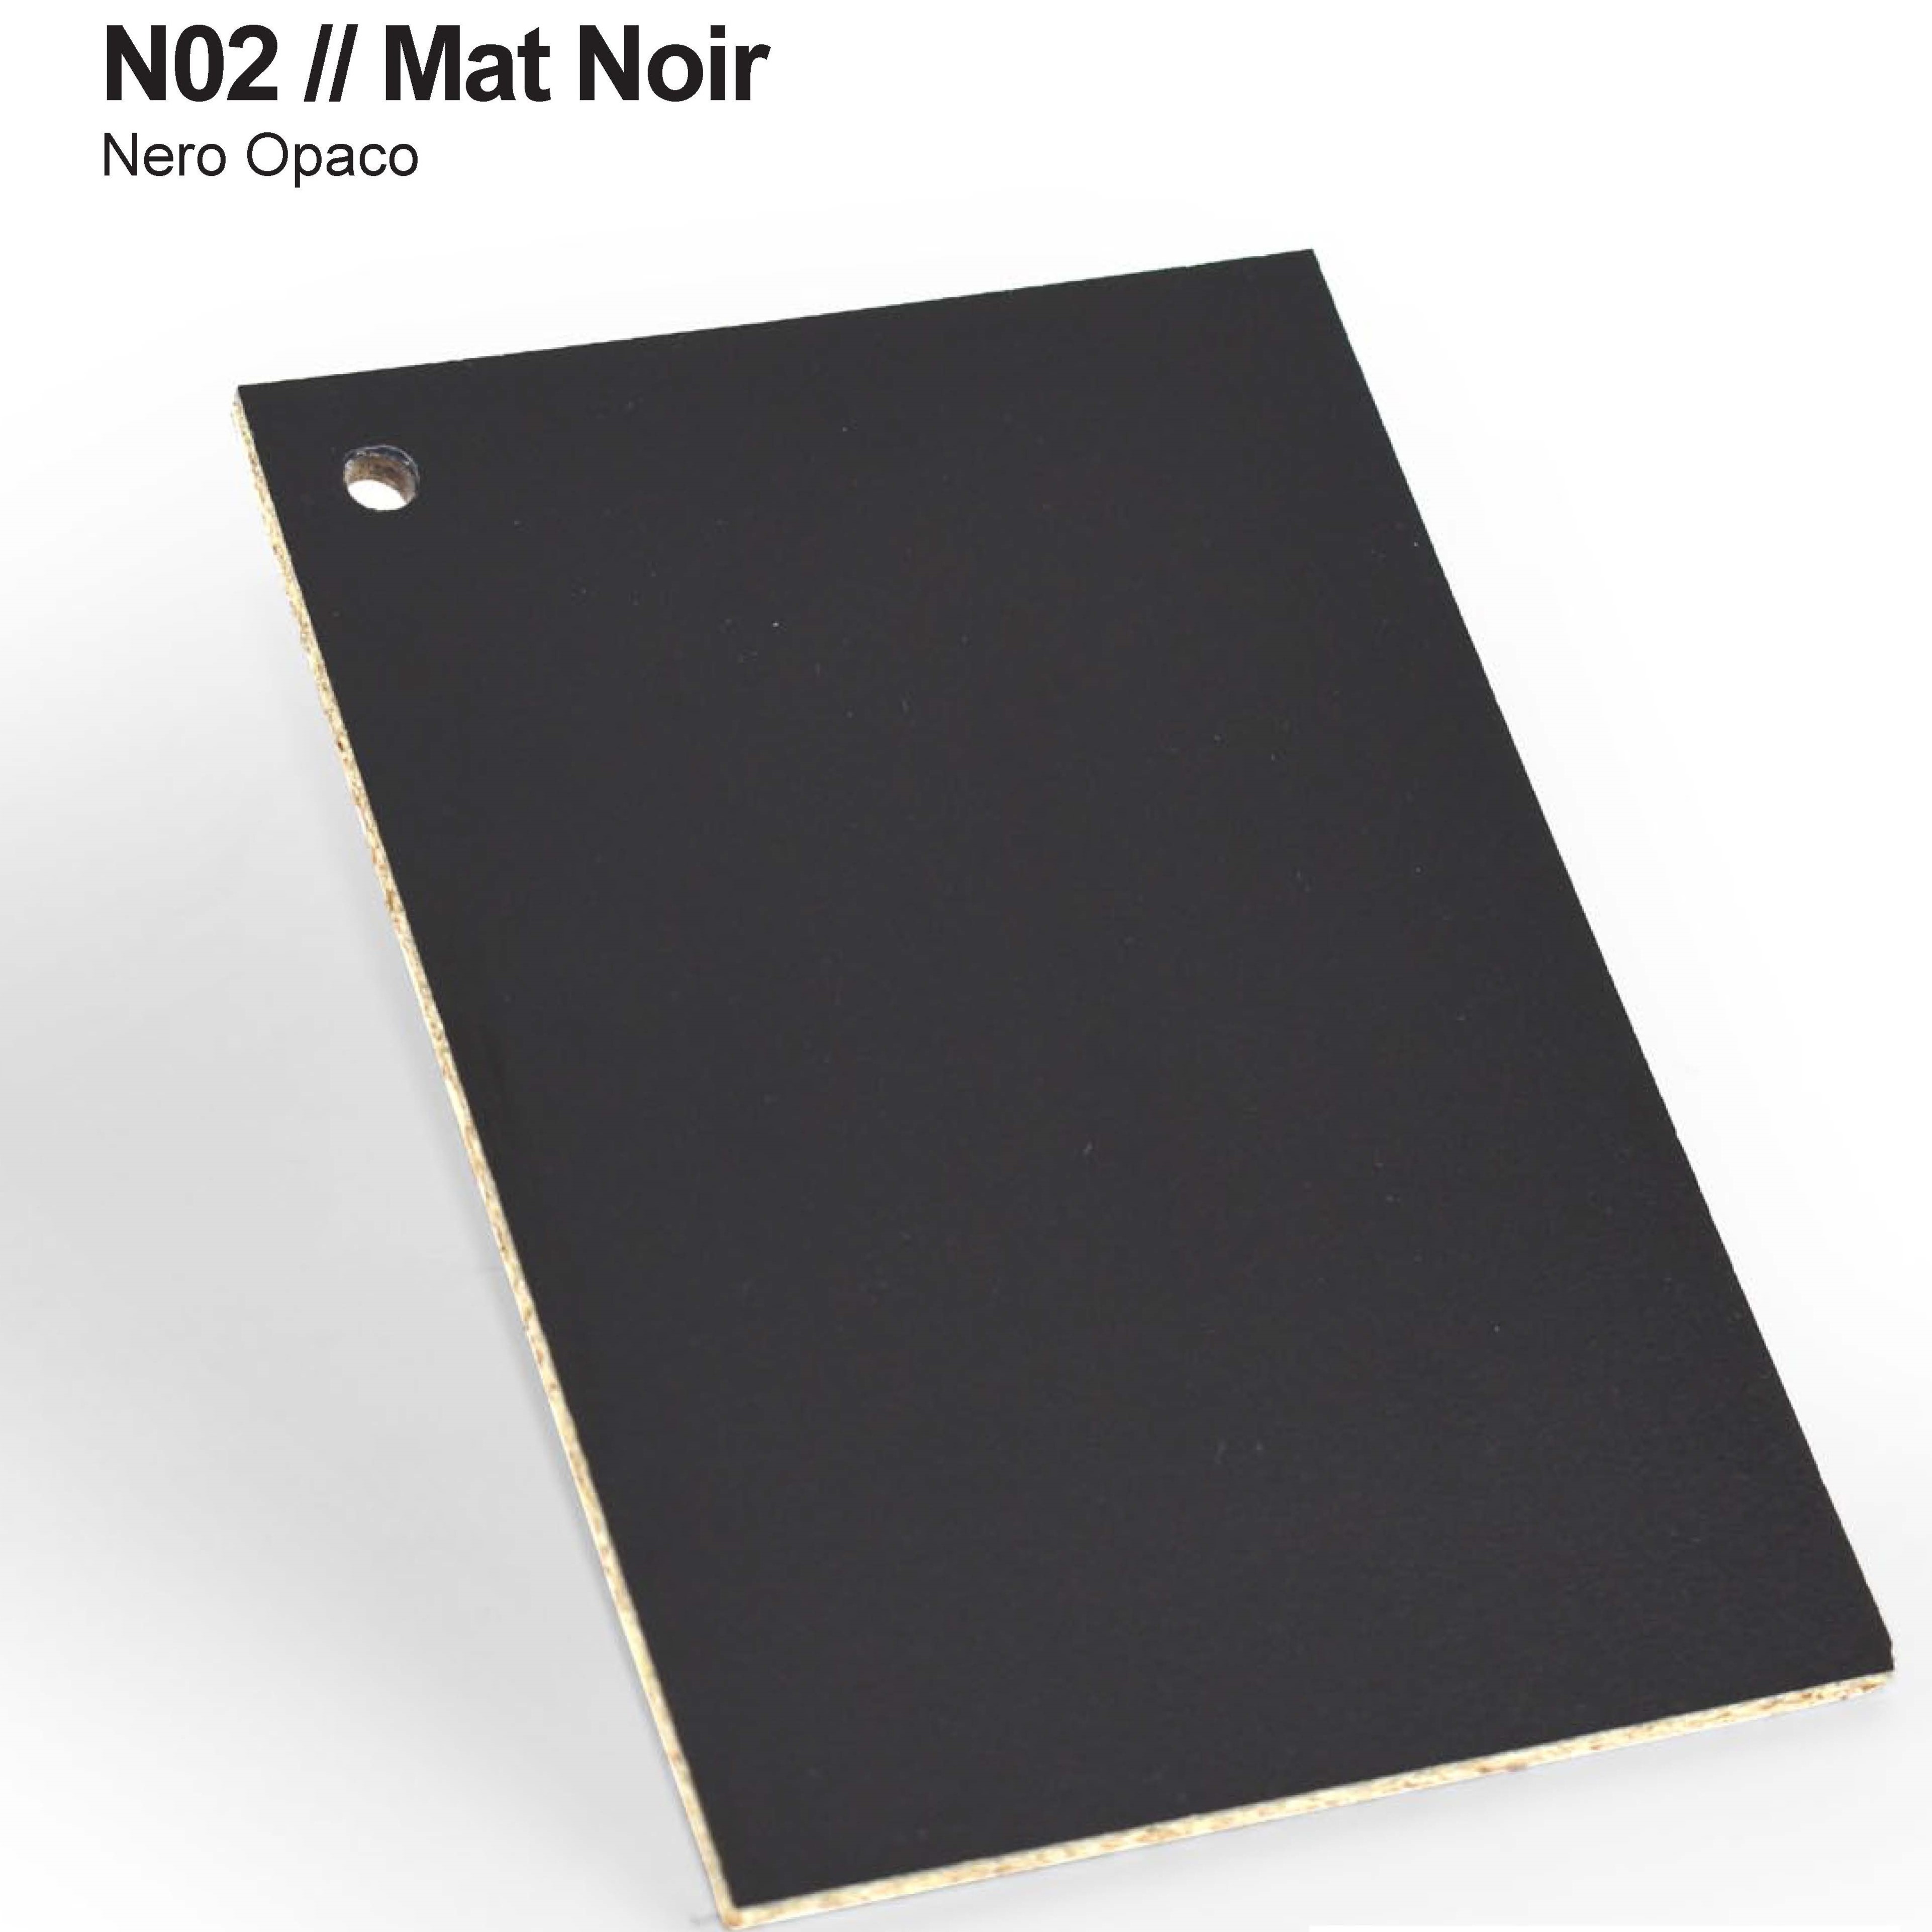 Mat Noir N02